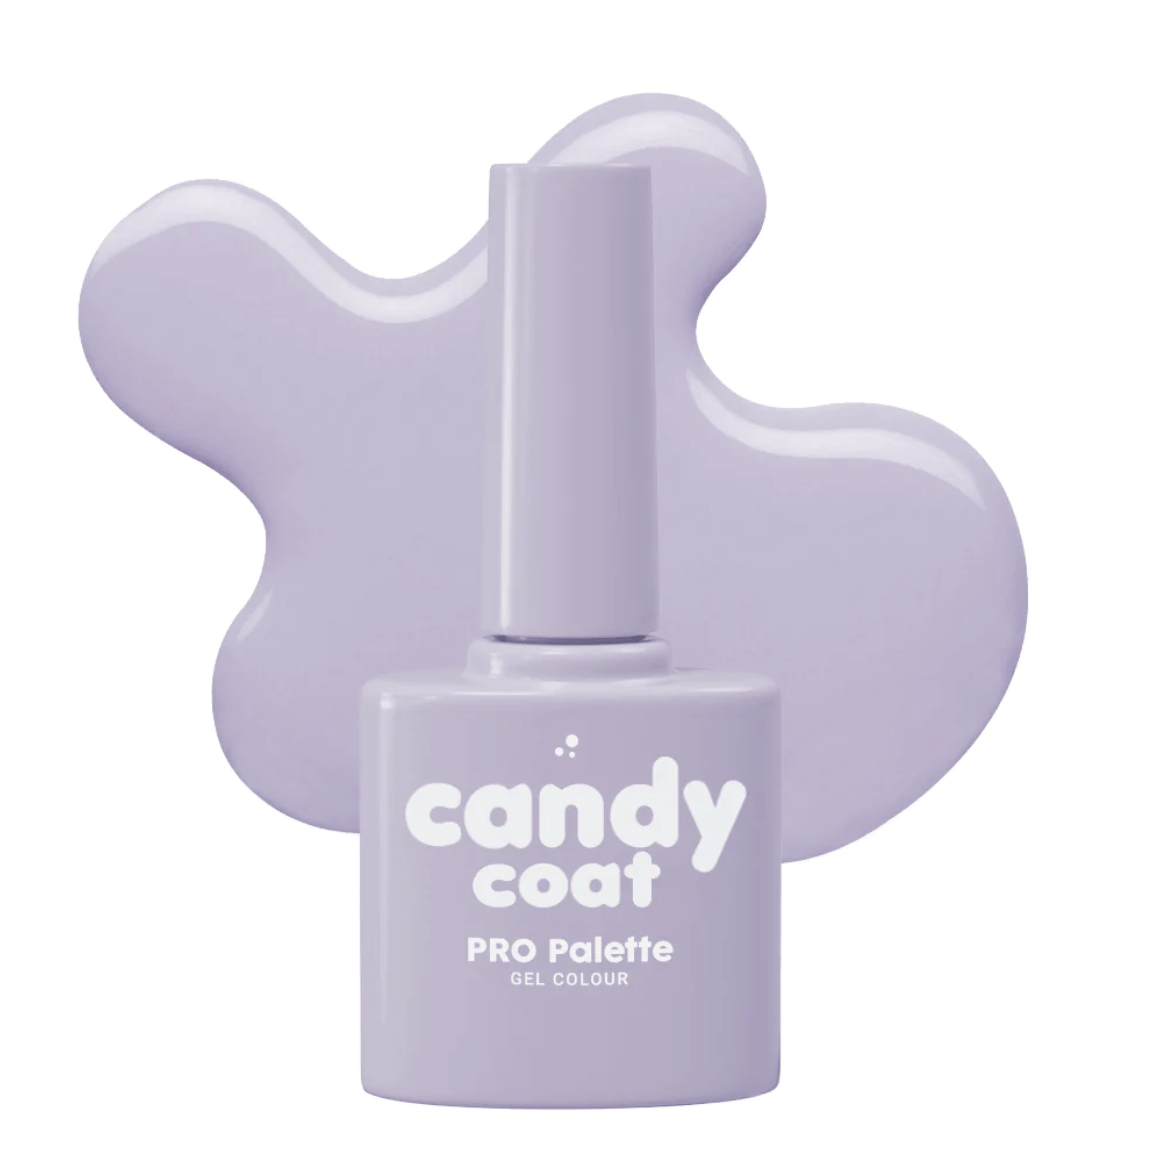 Candy Coat PRO Palette 675 Libby